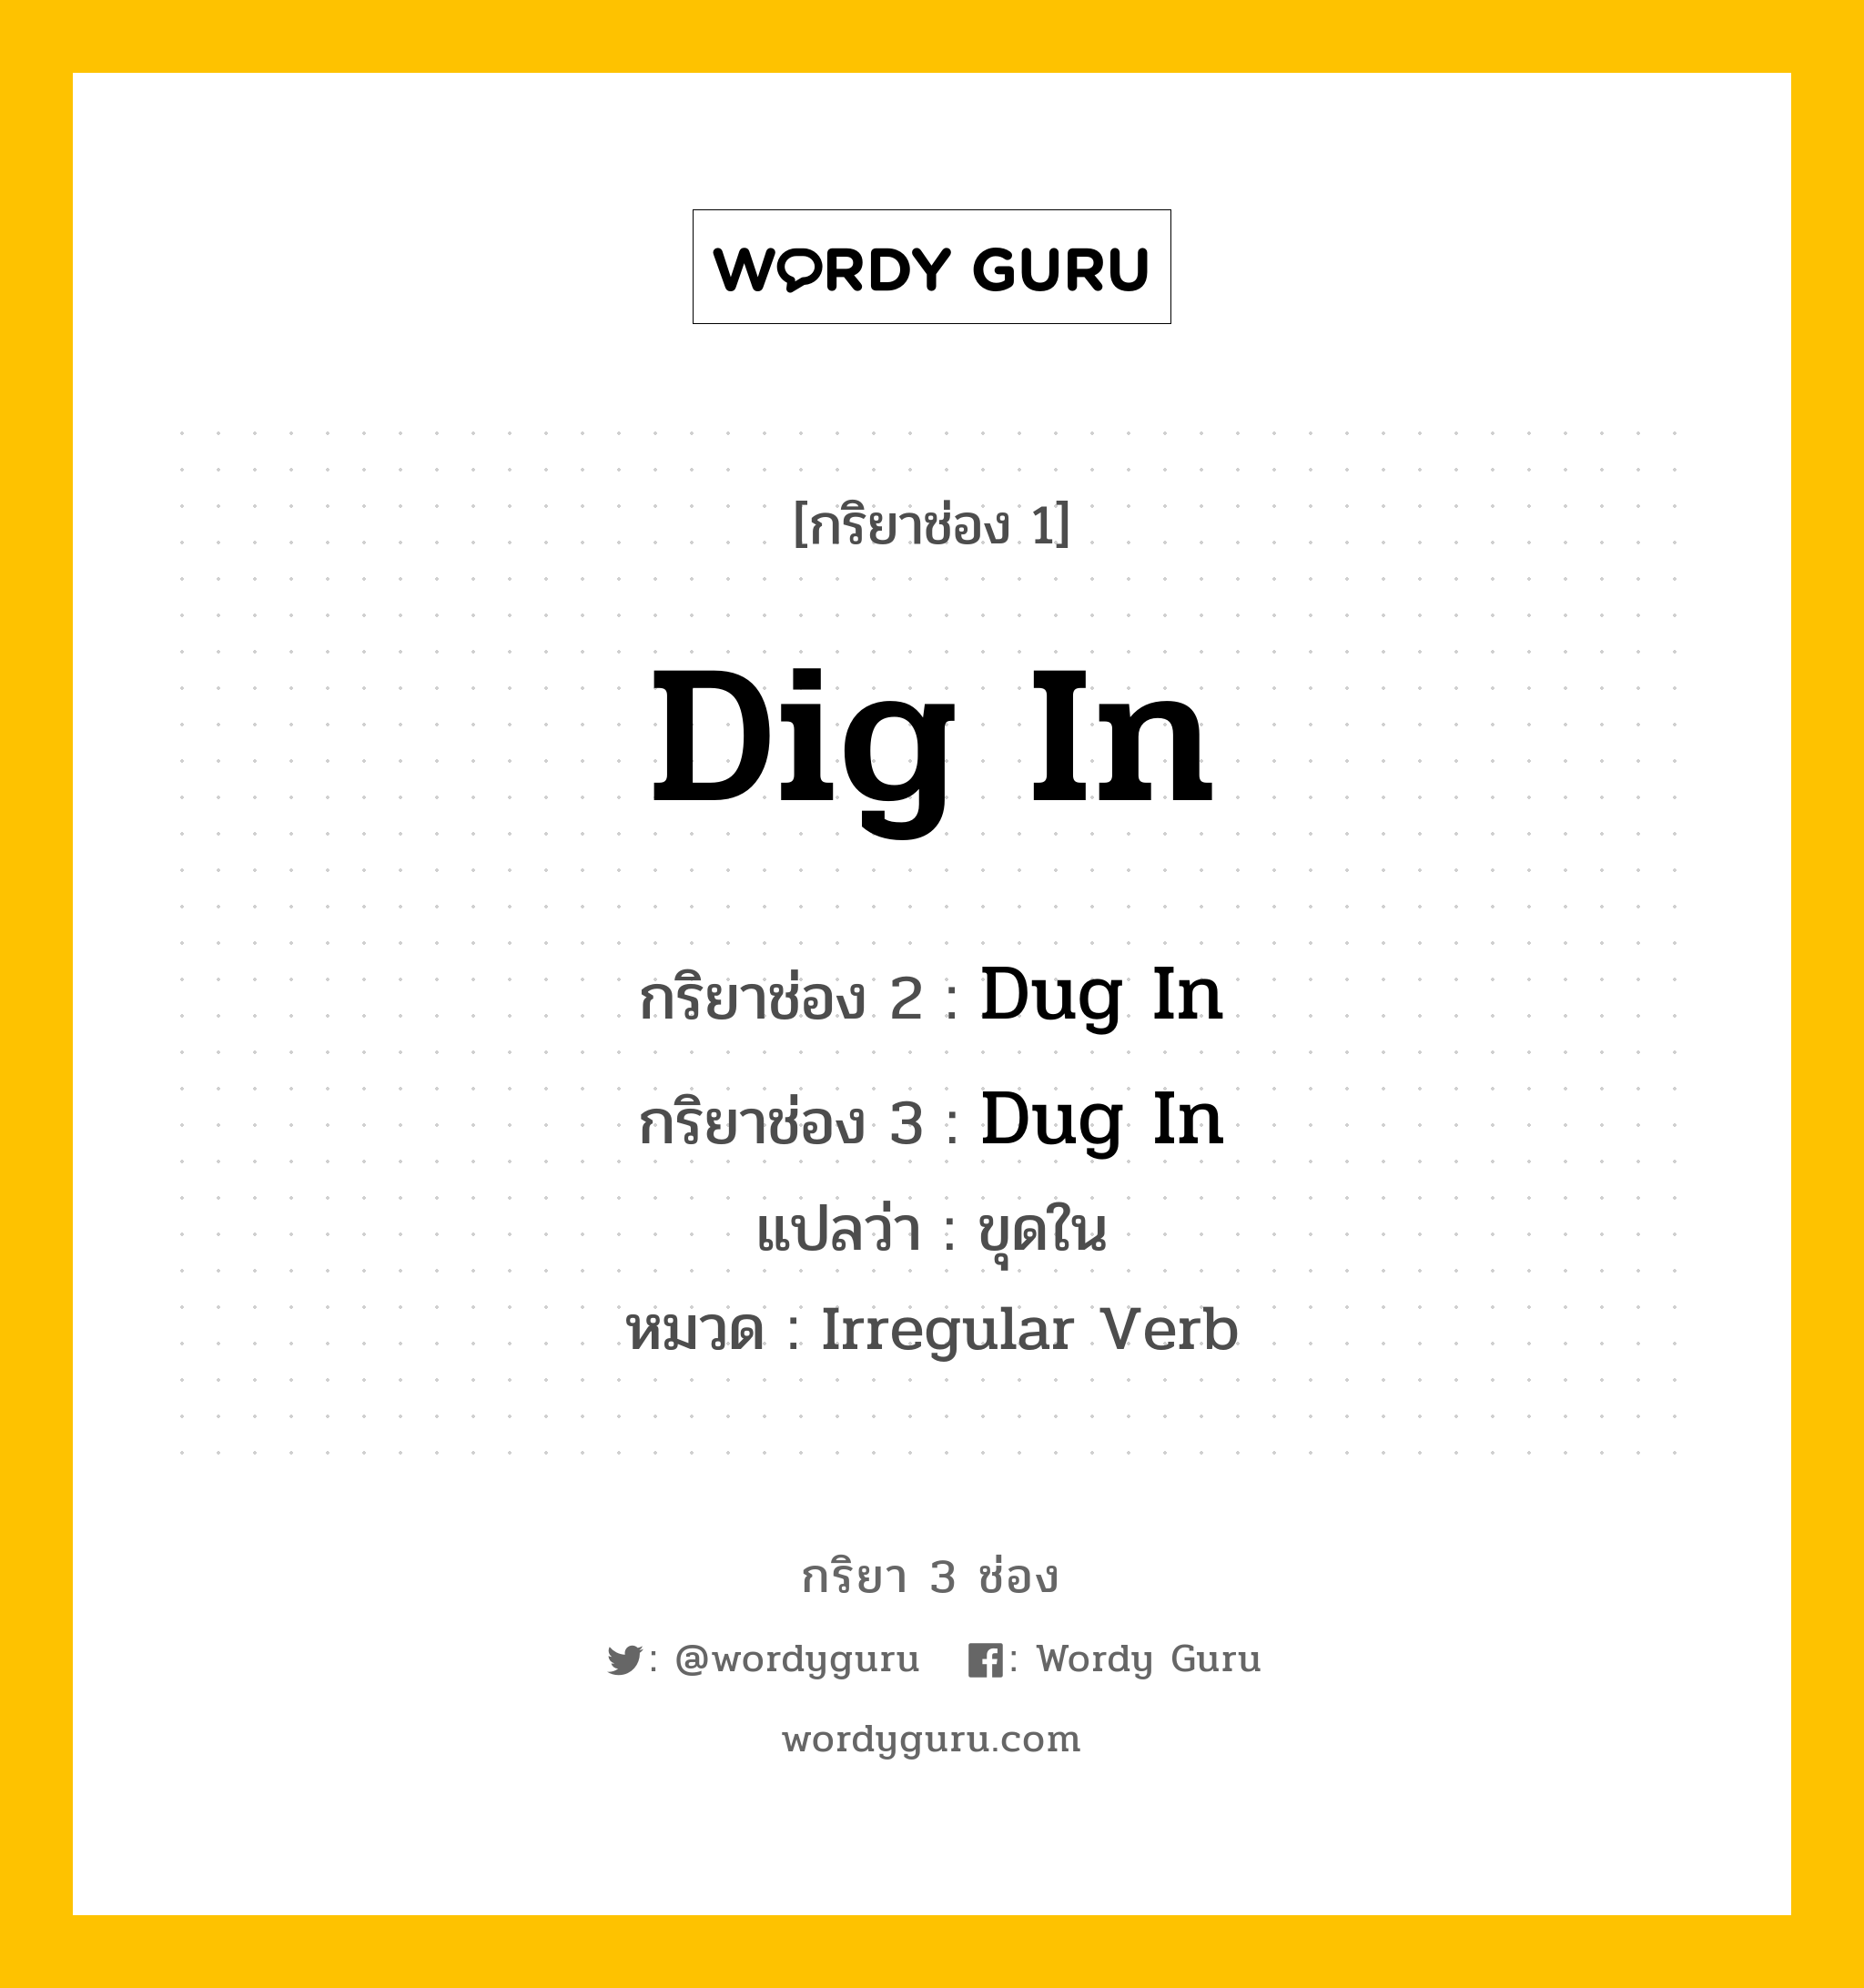 กริยา 3 ช่อง ของ Dig In คืออะไร? มาดูคำอ่าน คำแปลกันเลย, กริยาช่อง 1 Dig In กริยาช่อง 2 Dug In กริยาช่อง 3 Dug In แปลว่า ขุดใน หมวด Irregular Verb หมวด Irregular Verb